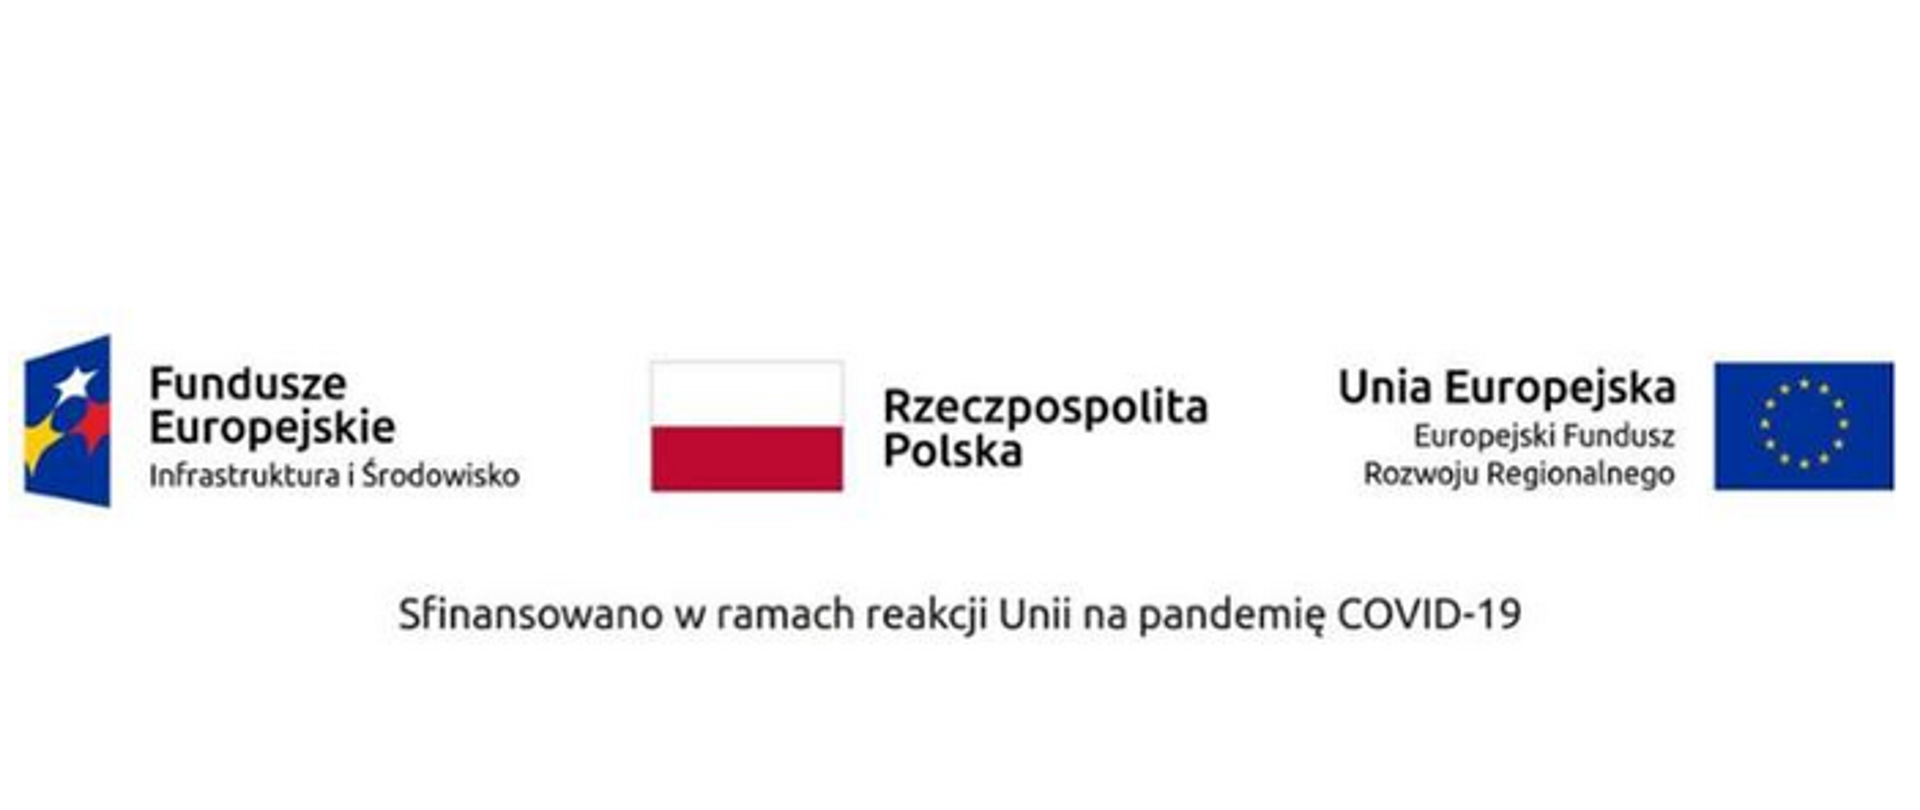 Na grafice jest logo Funduszy Europejskich, flaga Rzeczpospolitej Polskiej oraz logo Unii Europejskiej. Poniżej jest napisane: Sfinansowano w ramach reakcji Unii na pandemię COVID-19.